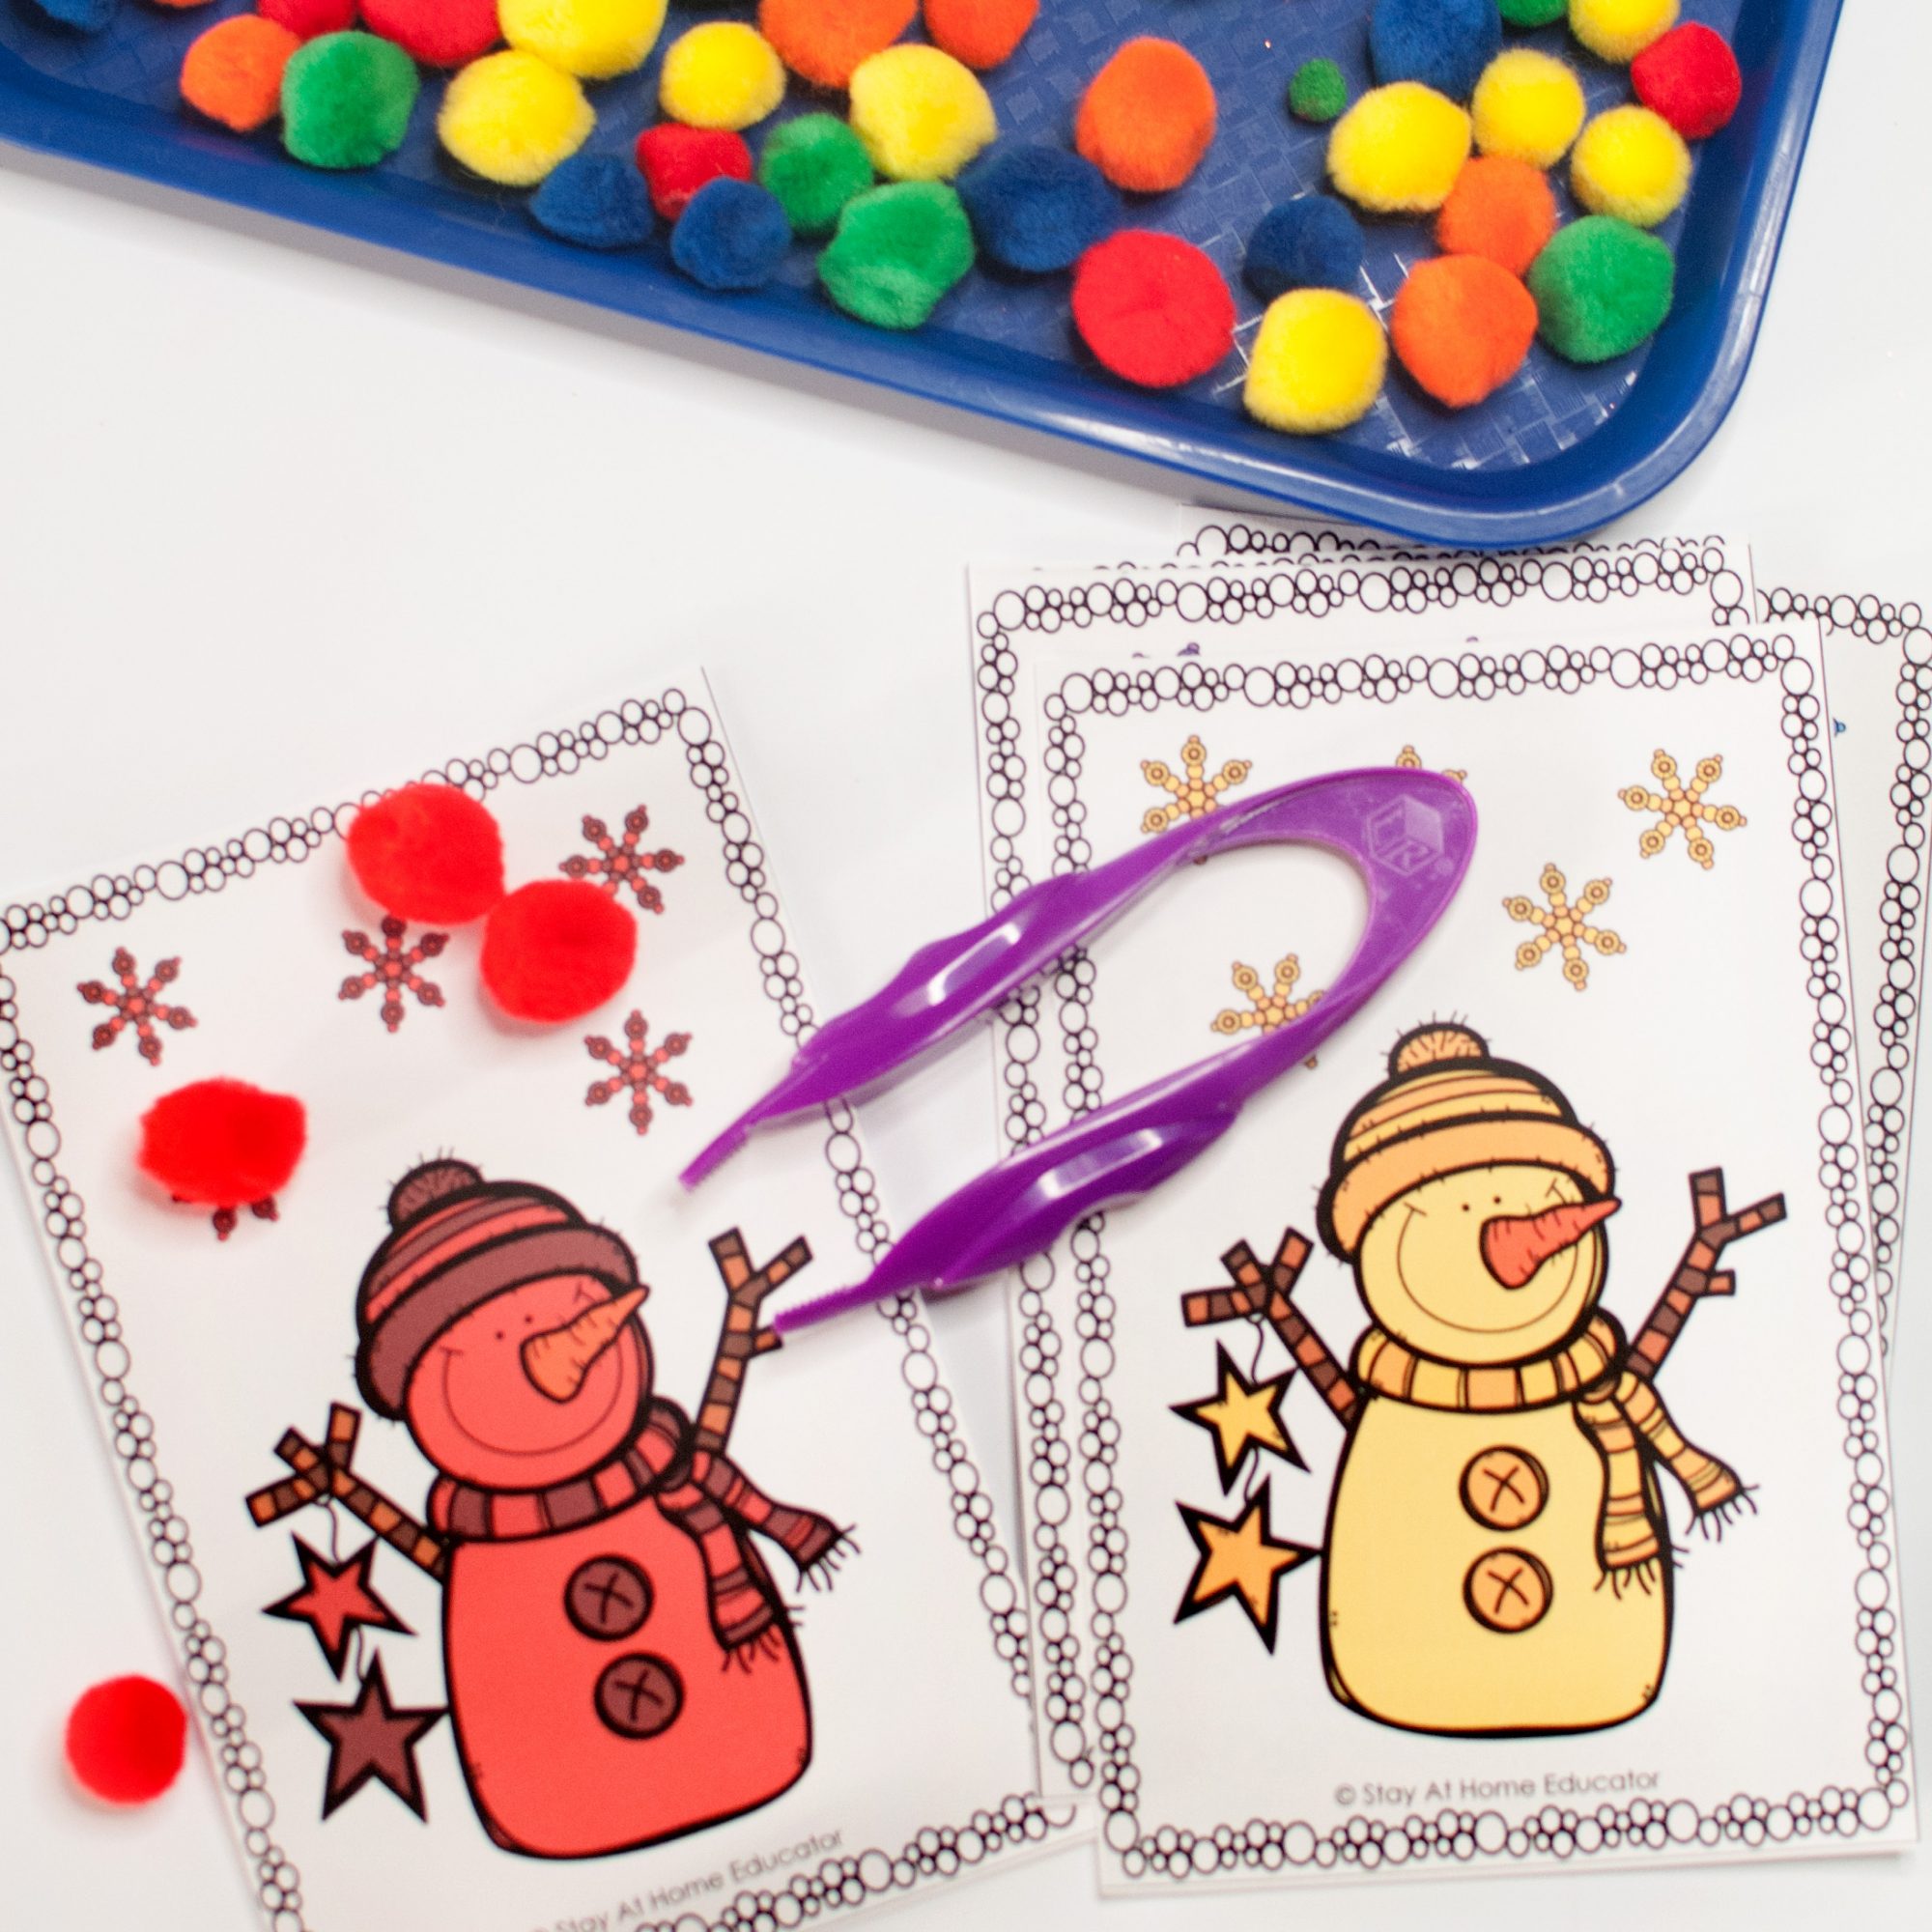 Snowman activities for Christmas activities for preschoolers